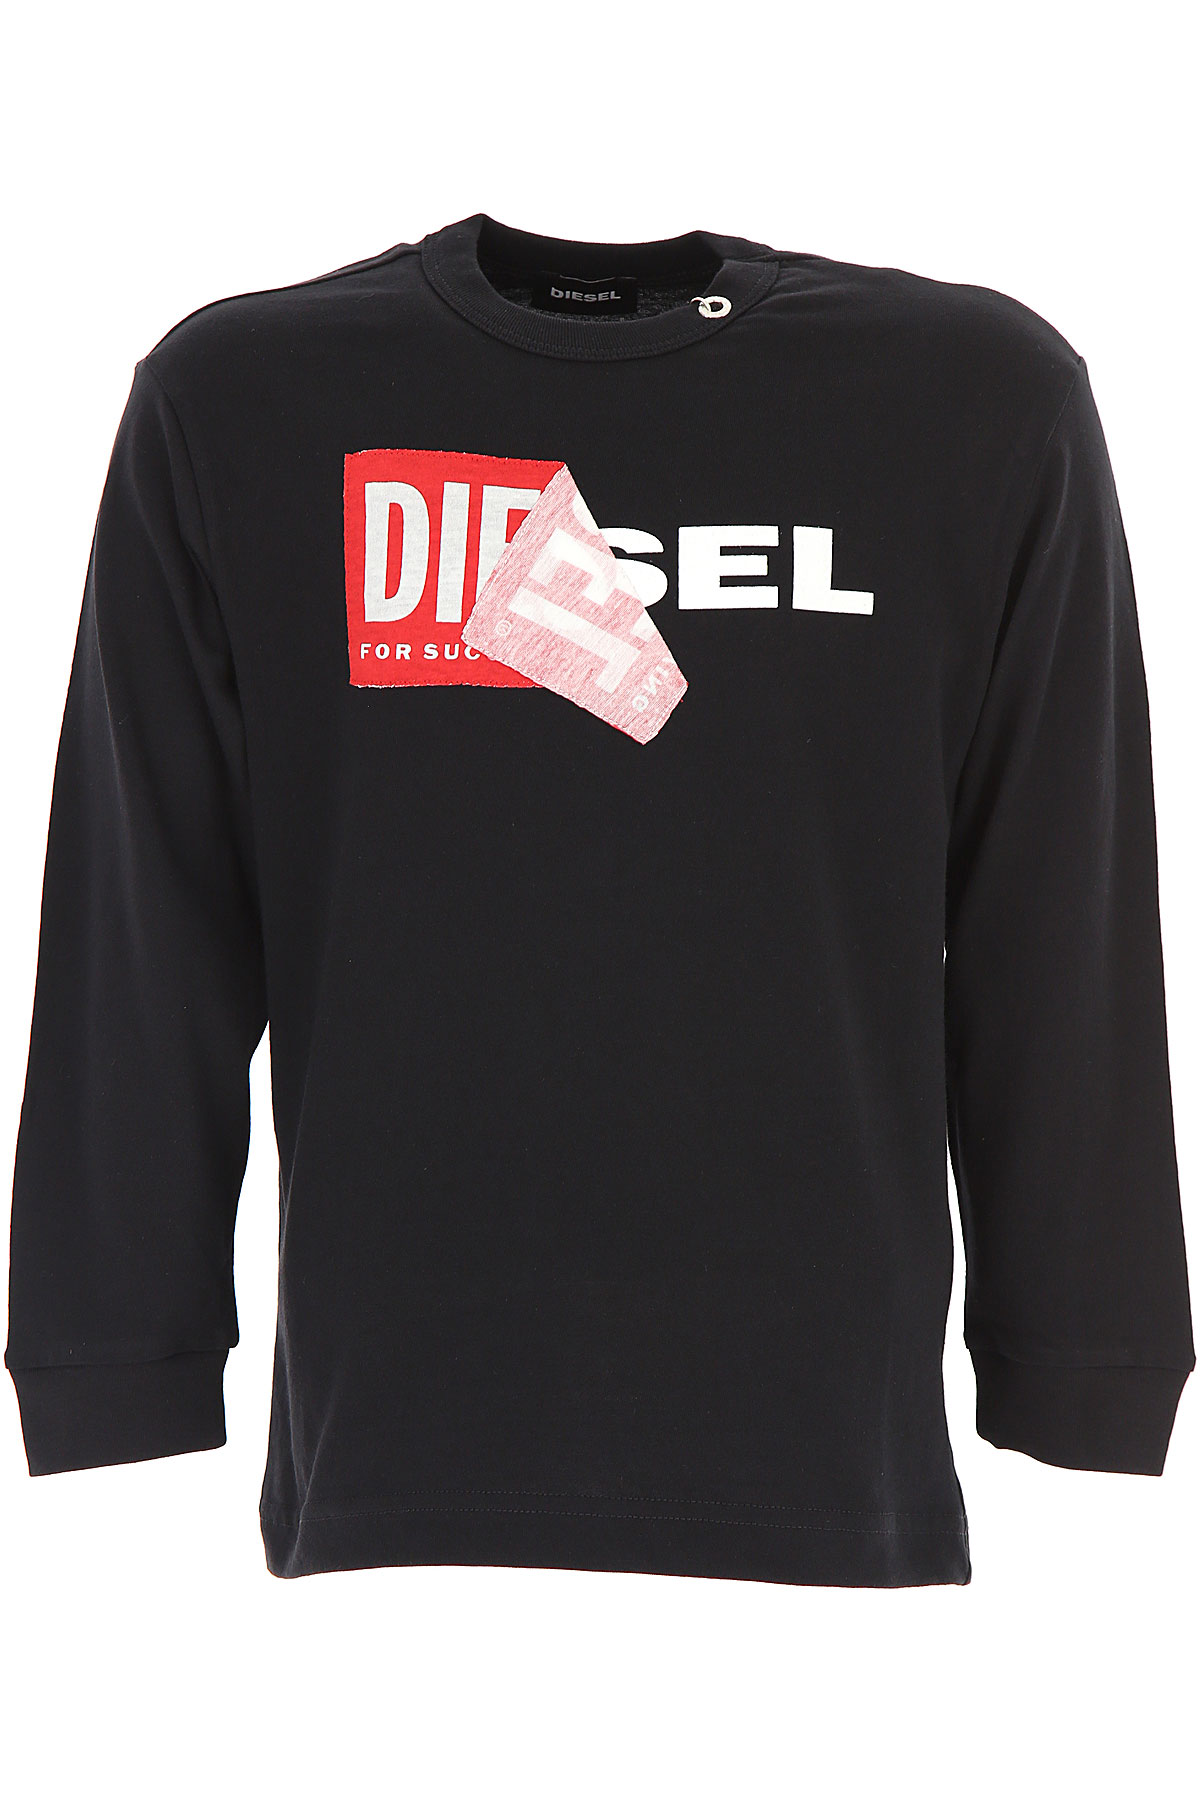 Diesel Kinder T-Shirt für Jungen Günstig im Sale, Schwarz, Baumwolle, 2017, 12Y 14Y 16Y 8Y